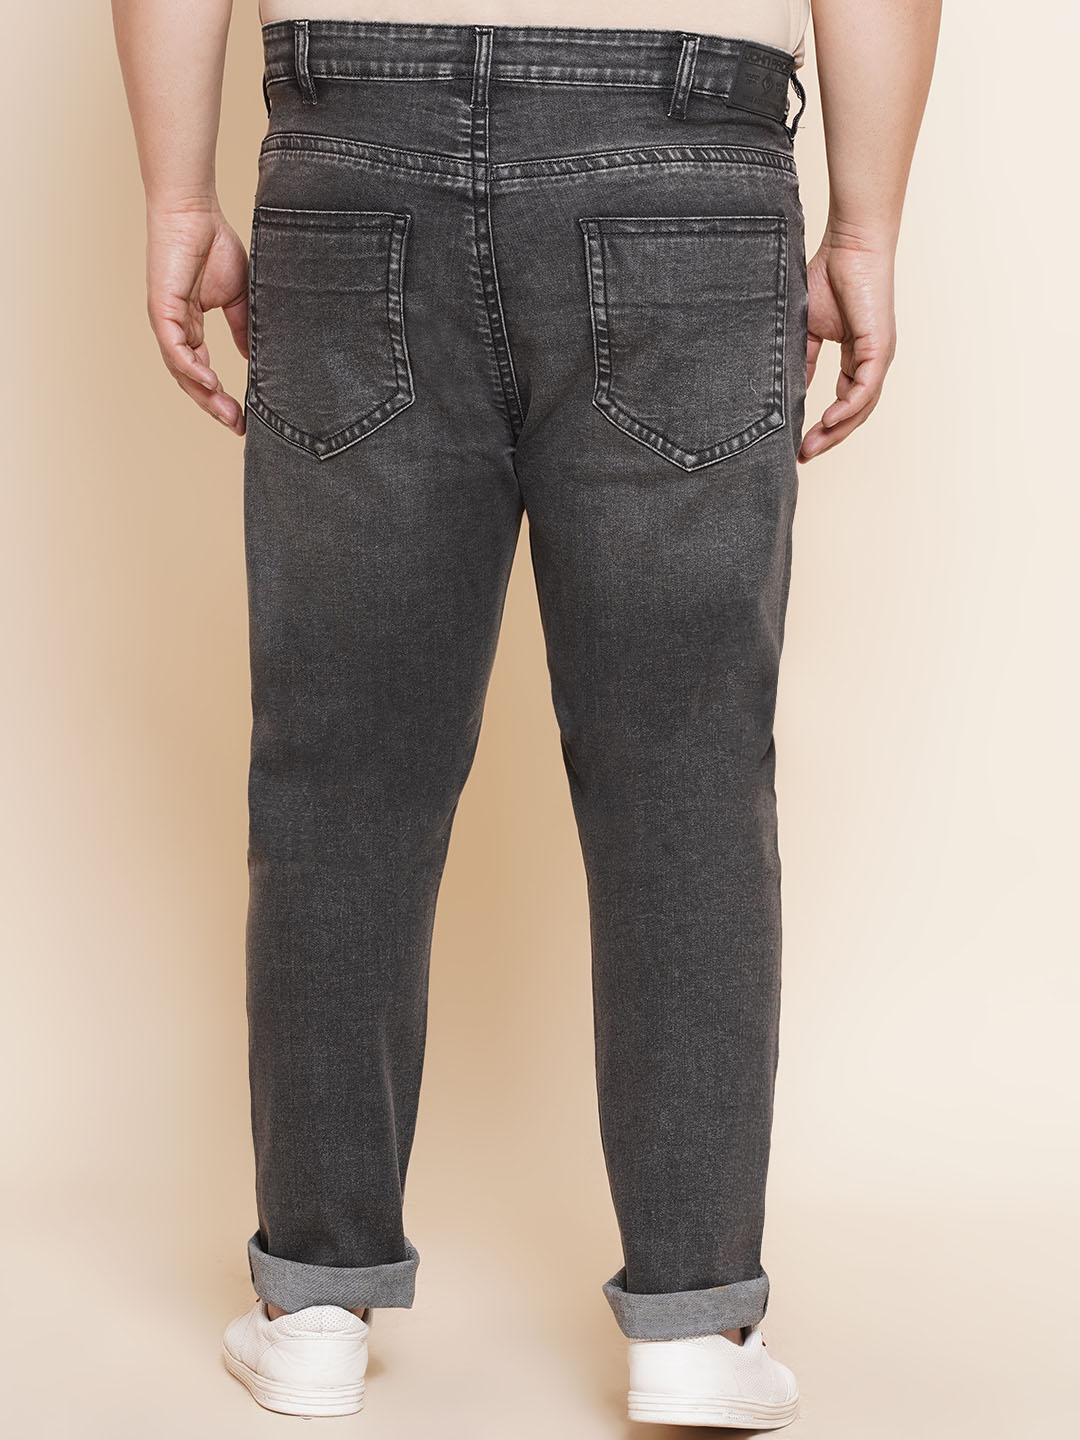 bottomwear/jeans/JPJ27016/jpj27016-5.jpg